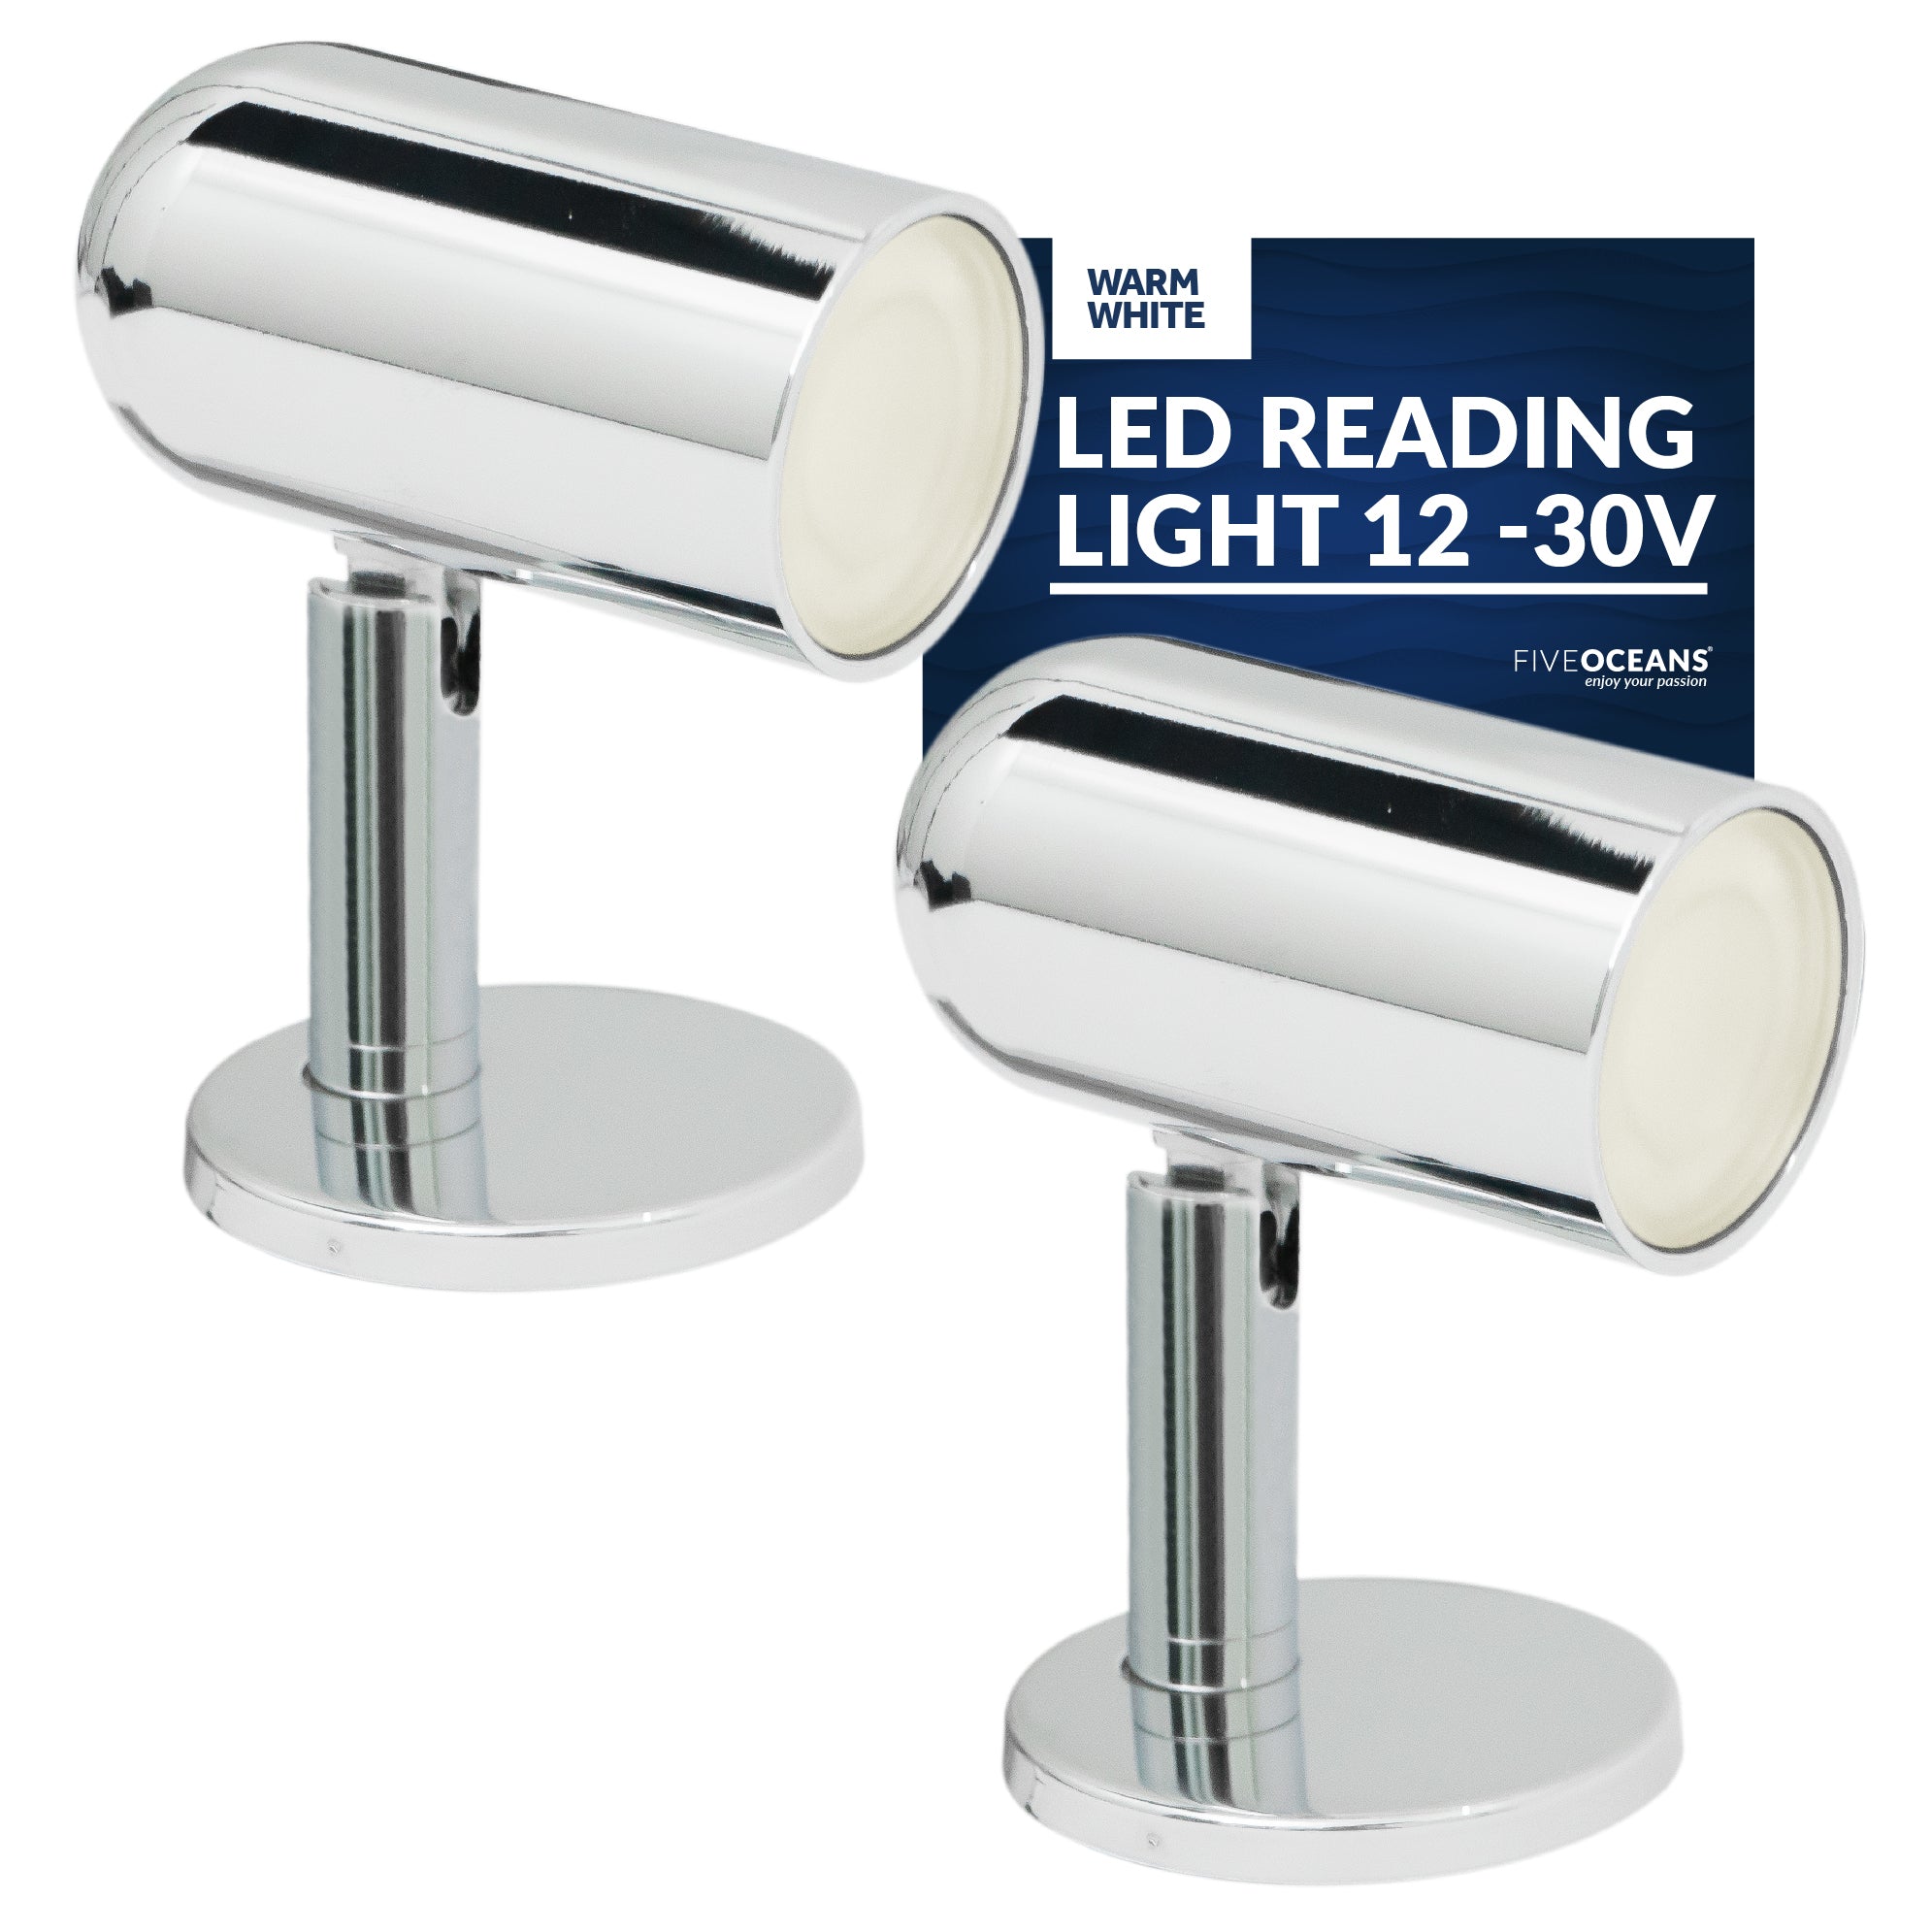 LED Reading Light, 12-30V, Warm White, 2-Pack - FO3733-M2